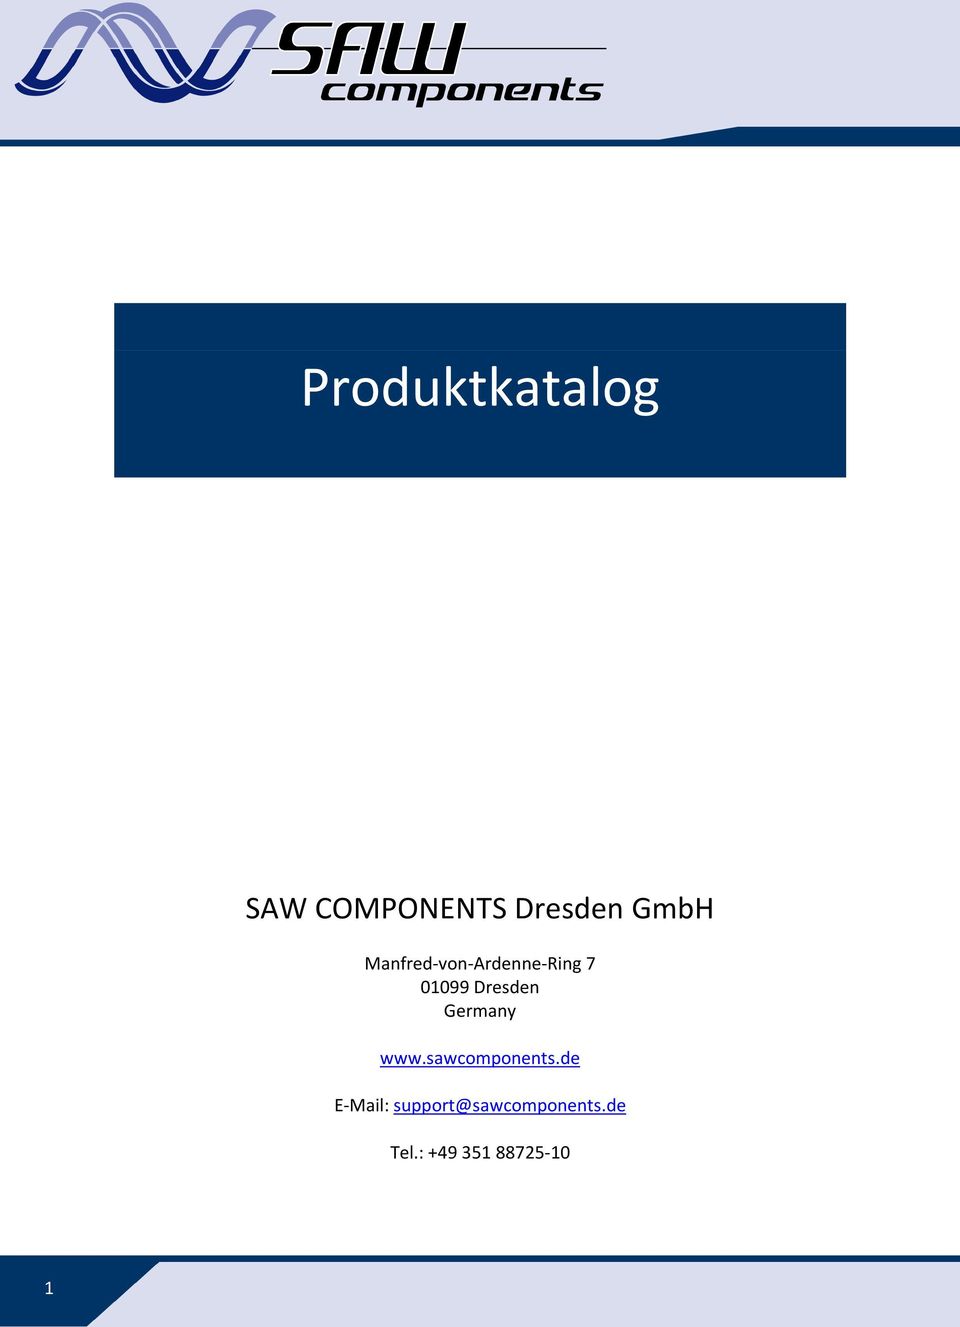 Germany www.sawcomponents.